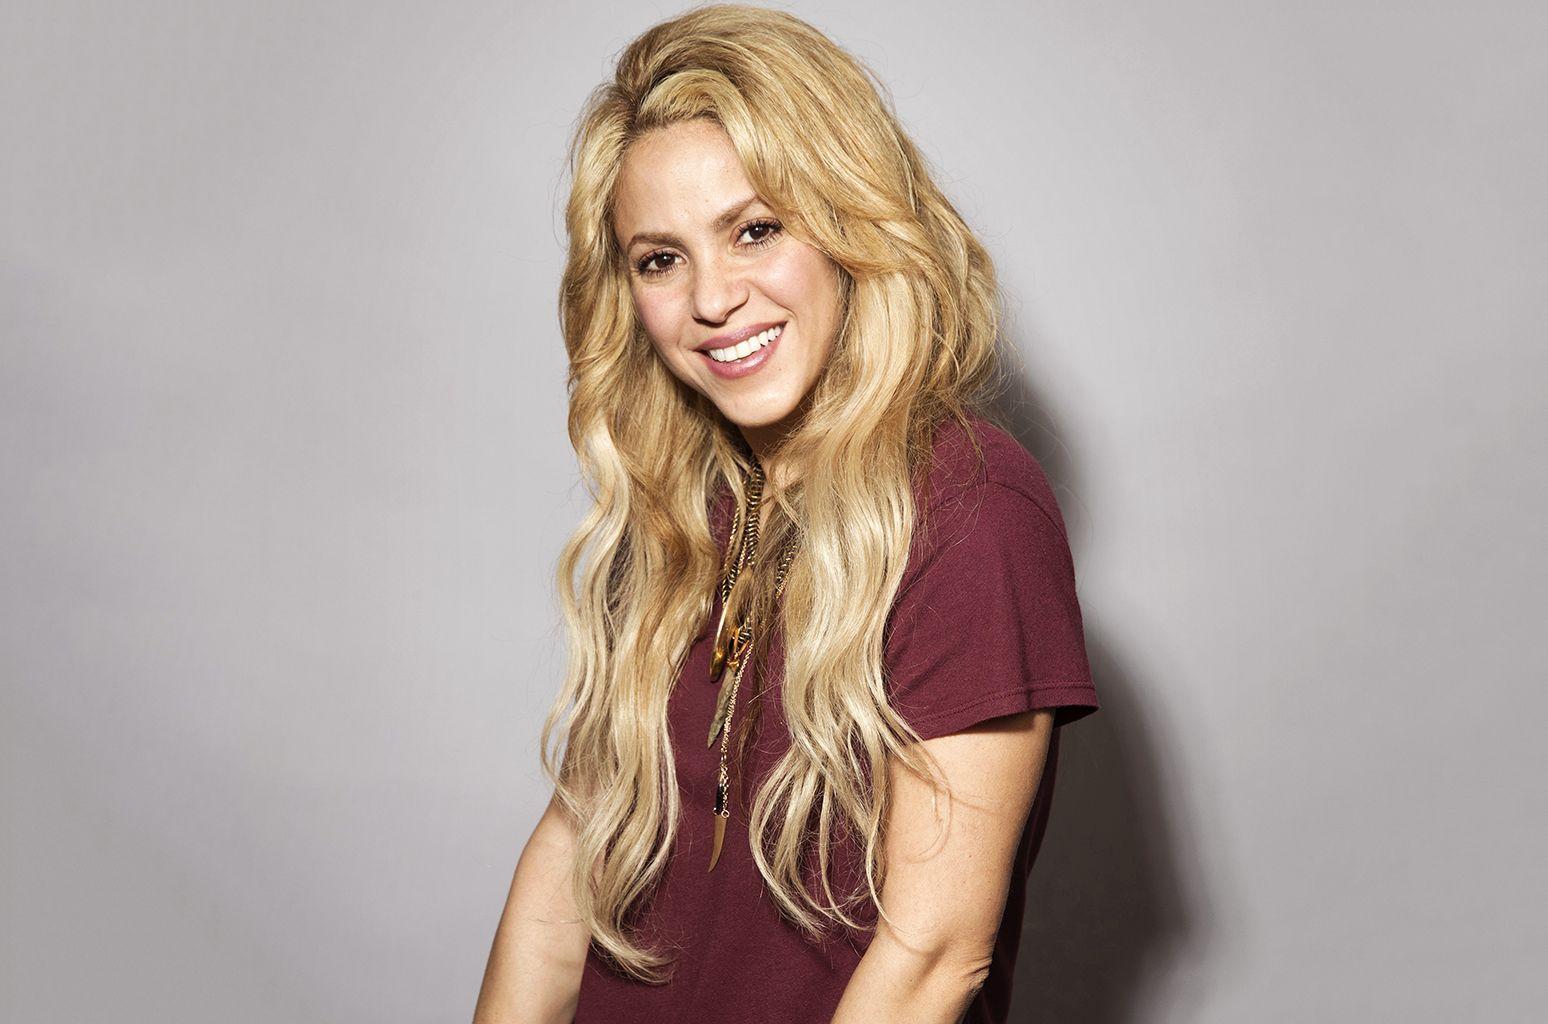 Shakira Beautiful And Glamorous HD Image Wallpaper